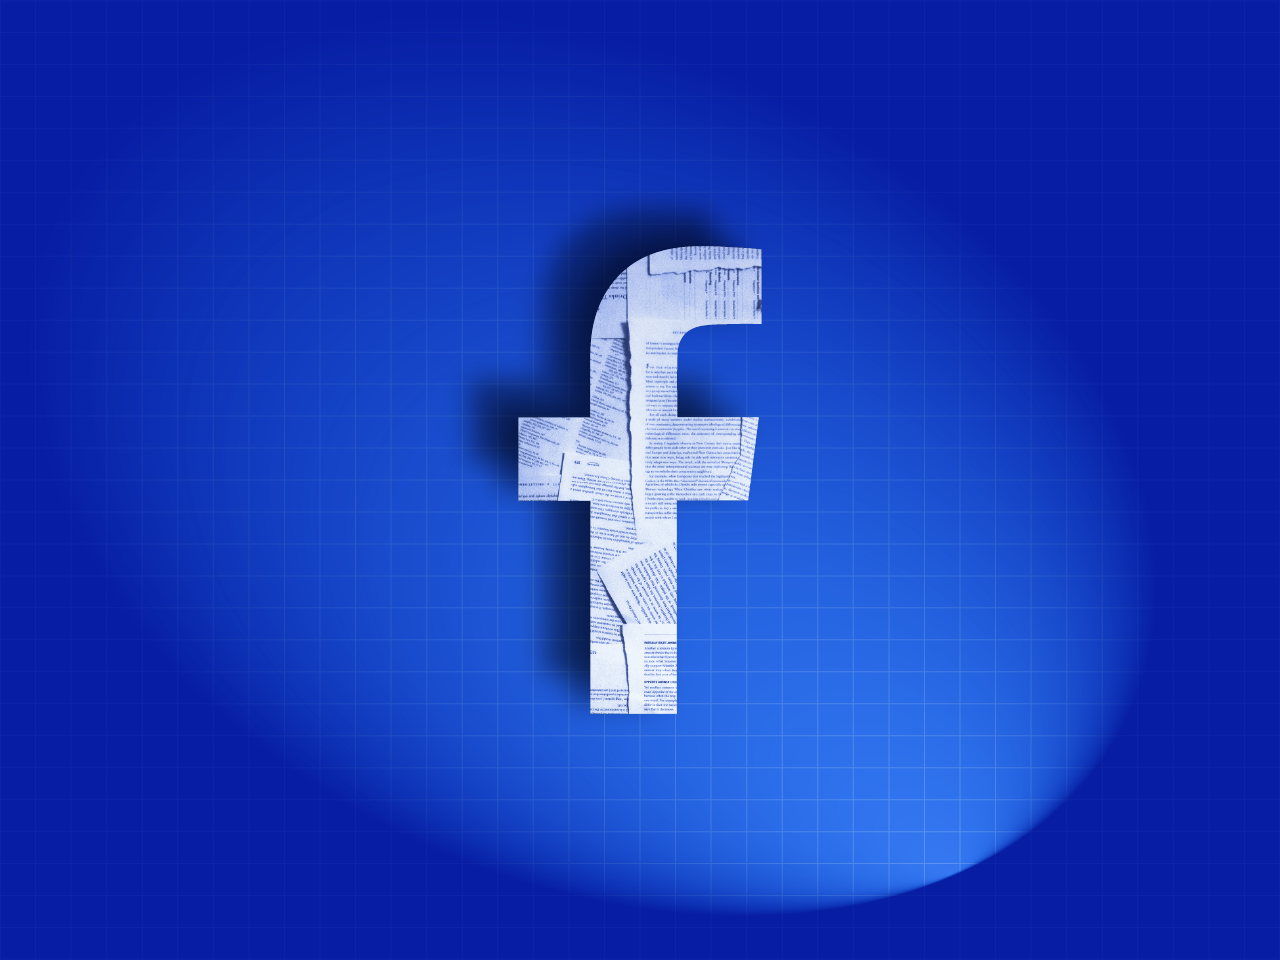 #FacebookPapers: pequenos ajustes na interface poderiam frear disseminação de conteúdo tóxico